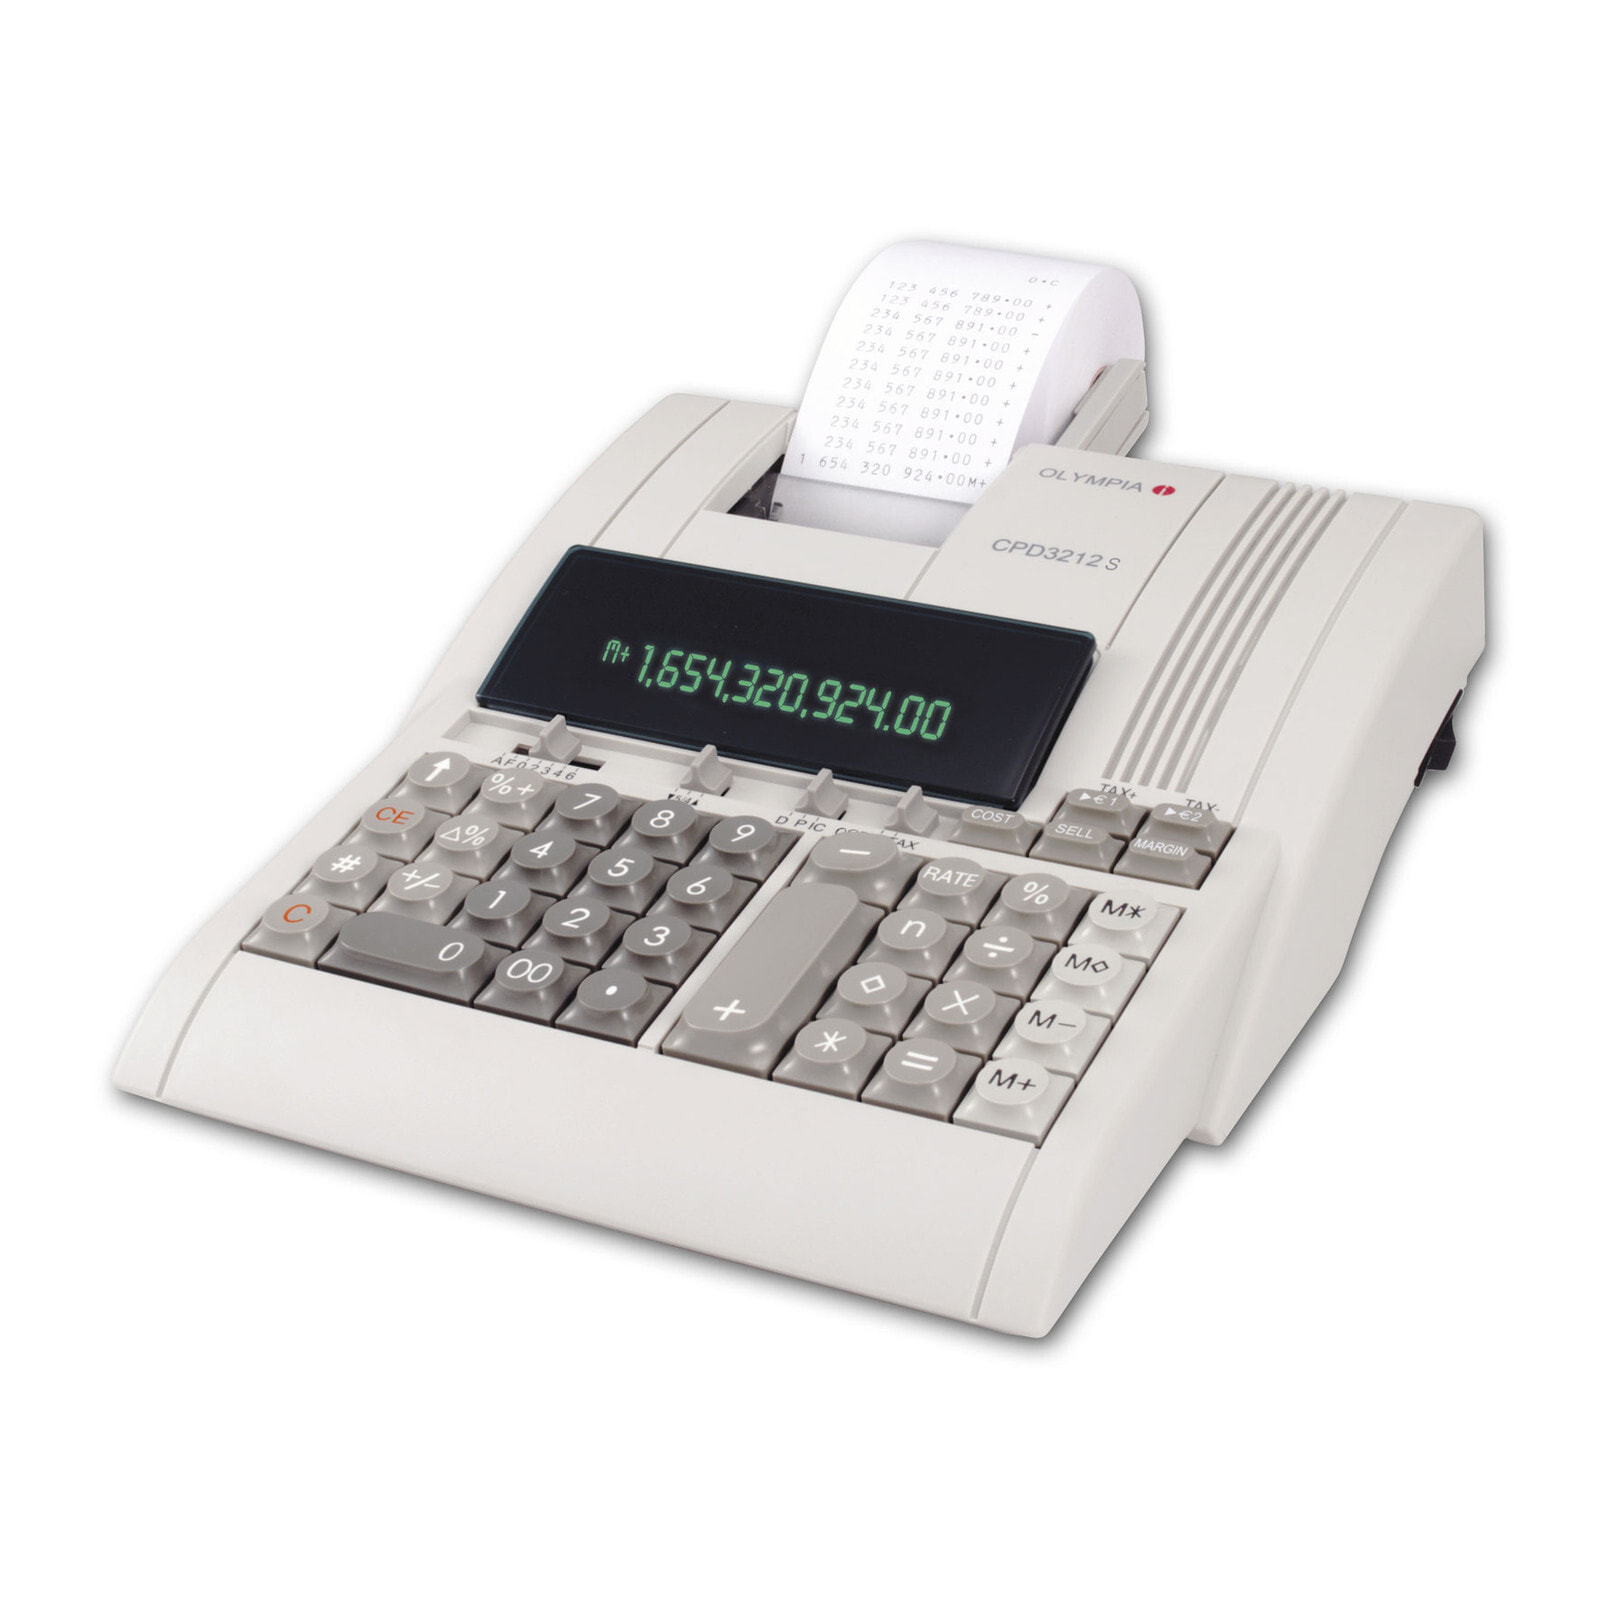 Olympia CPD 3212 S калькулятор Настольный Печатающий 946776002